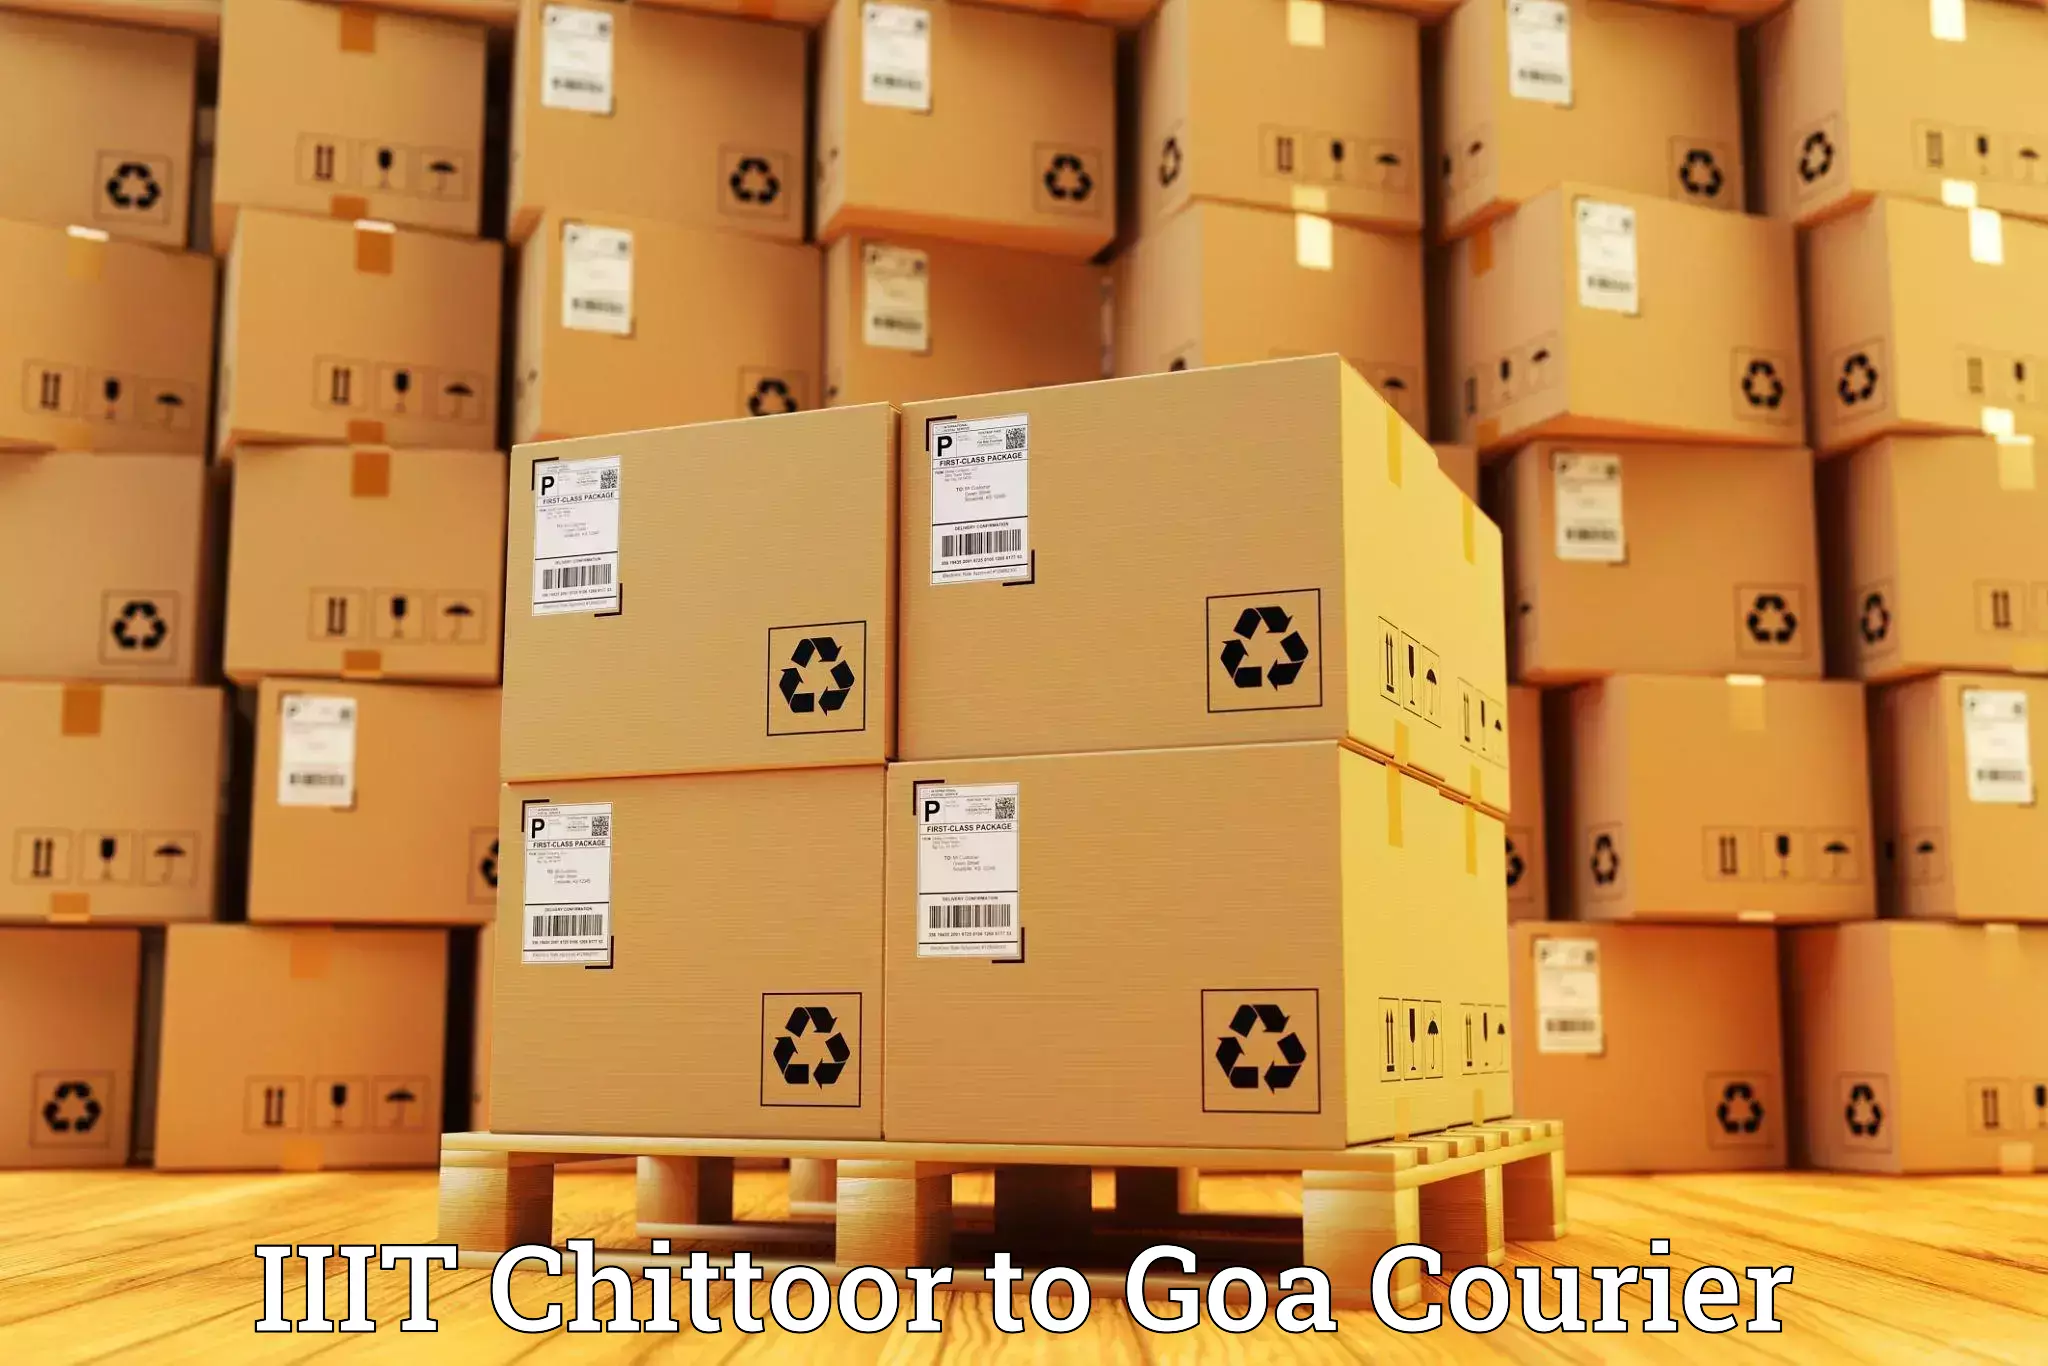 Cross-border shipping IIIT Chittoor to IIT Goa